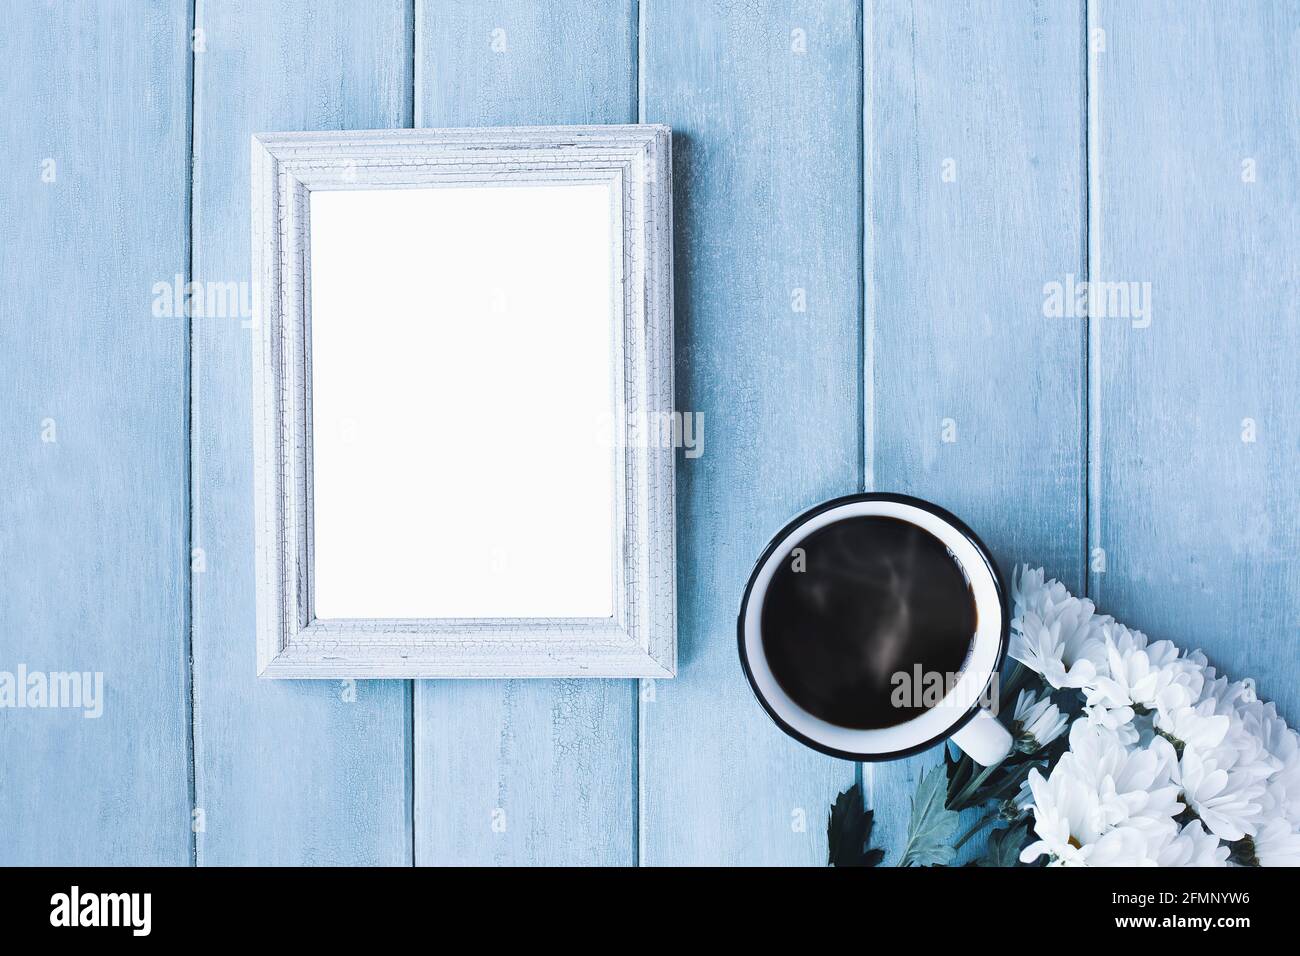 Leerer vertikaler Bilderrahmen auf blauem, rustikalem Hintergrund mit dampfendem Kaffee und weißen Gänseblümchen. Stockfoto